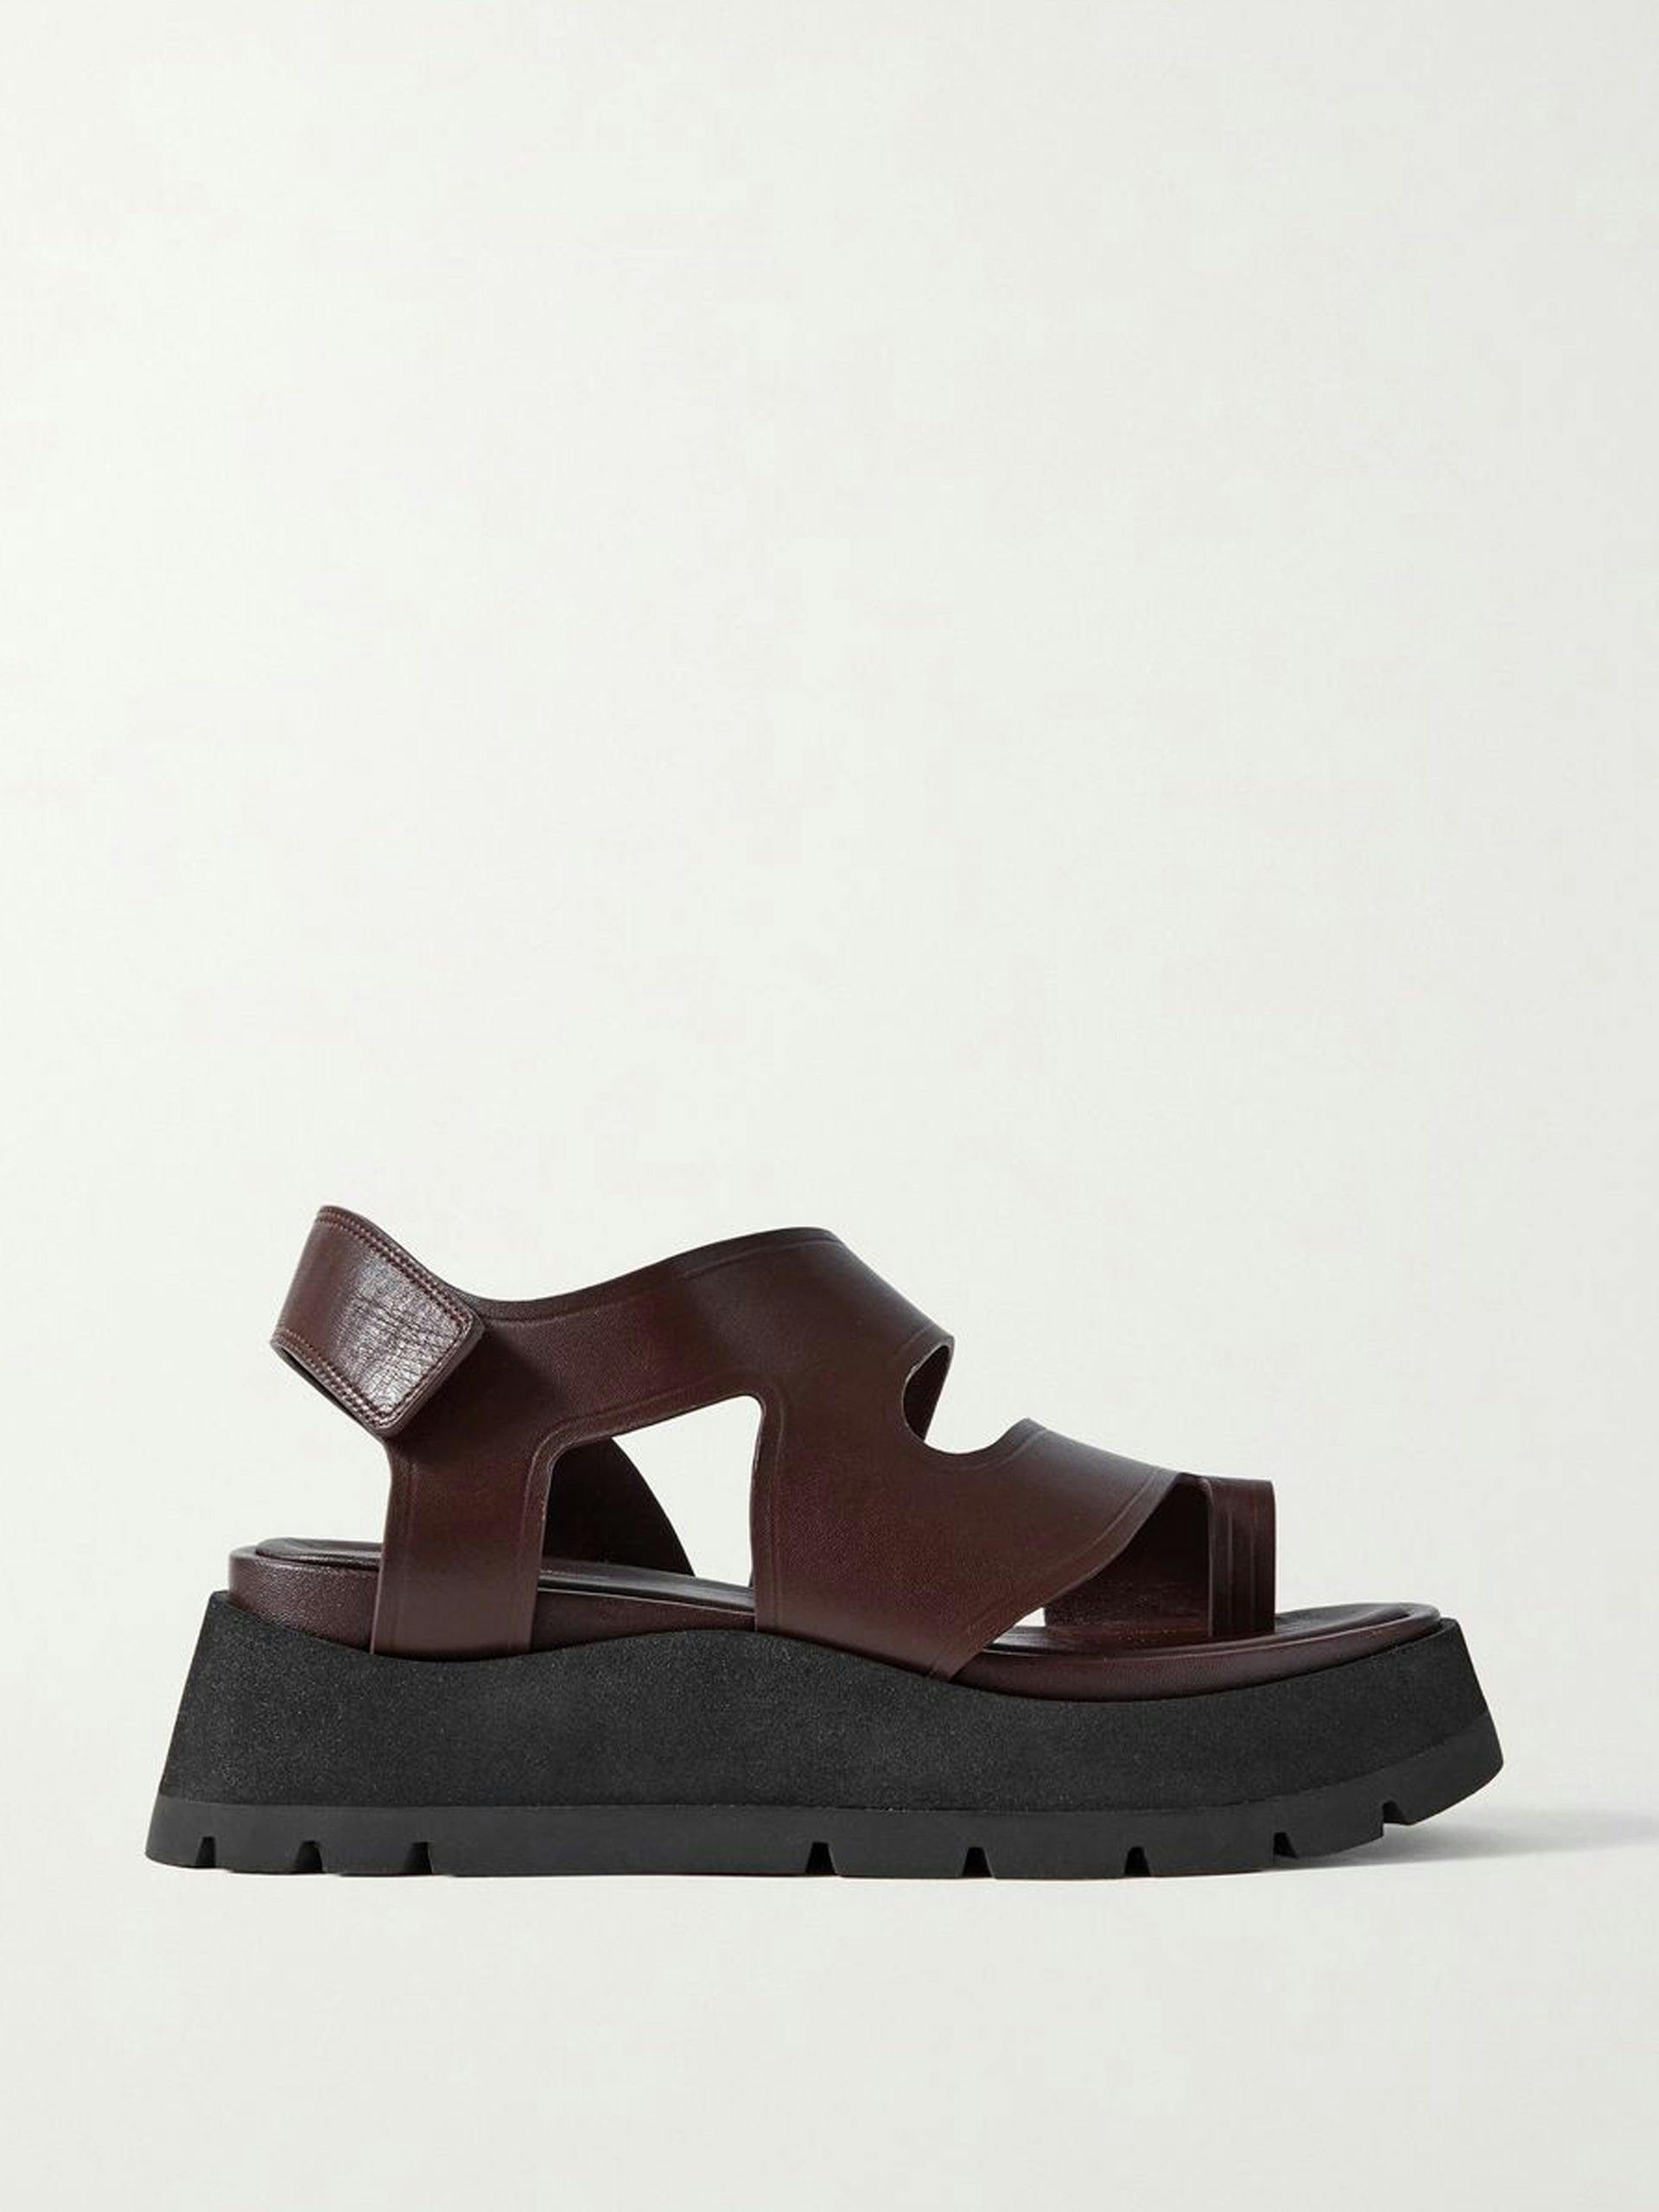 Leather platform sandals